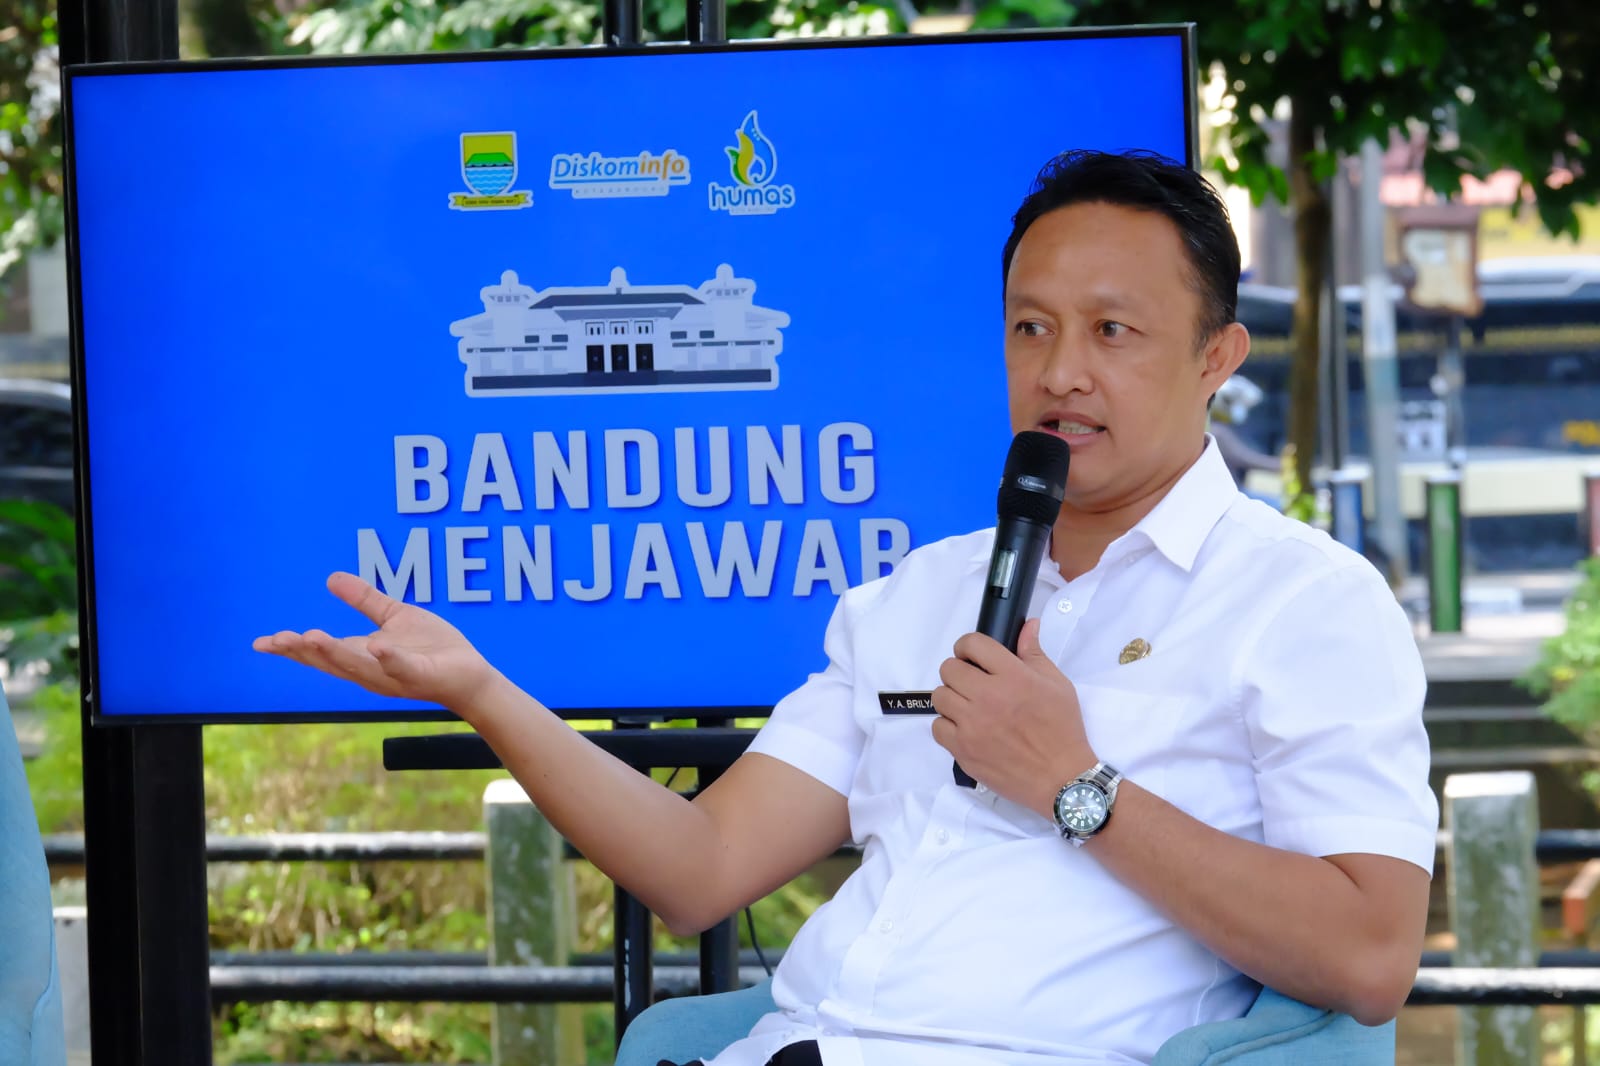 Siaran Pers Diskominfo Kota Bandung
22 Juni 2022